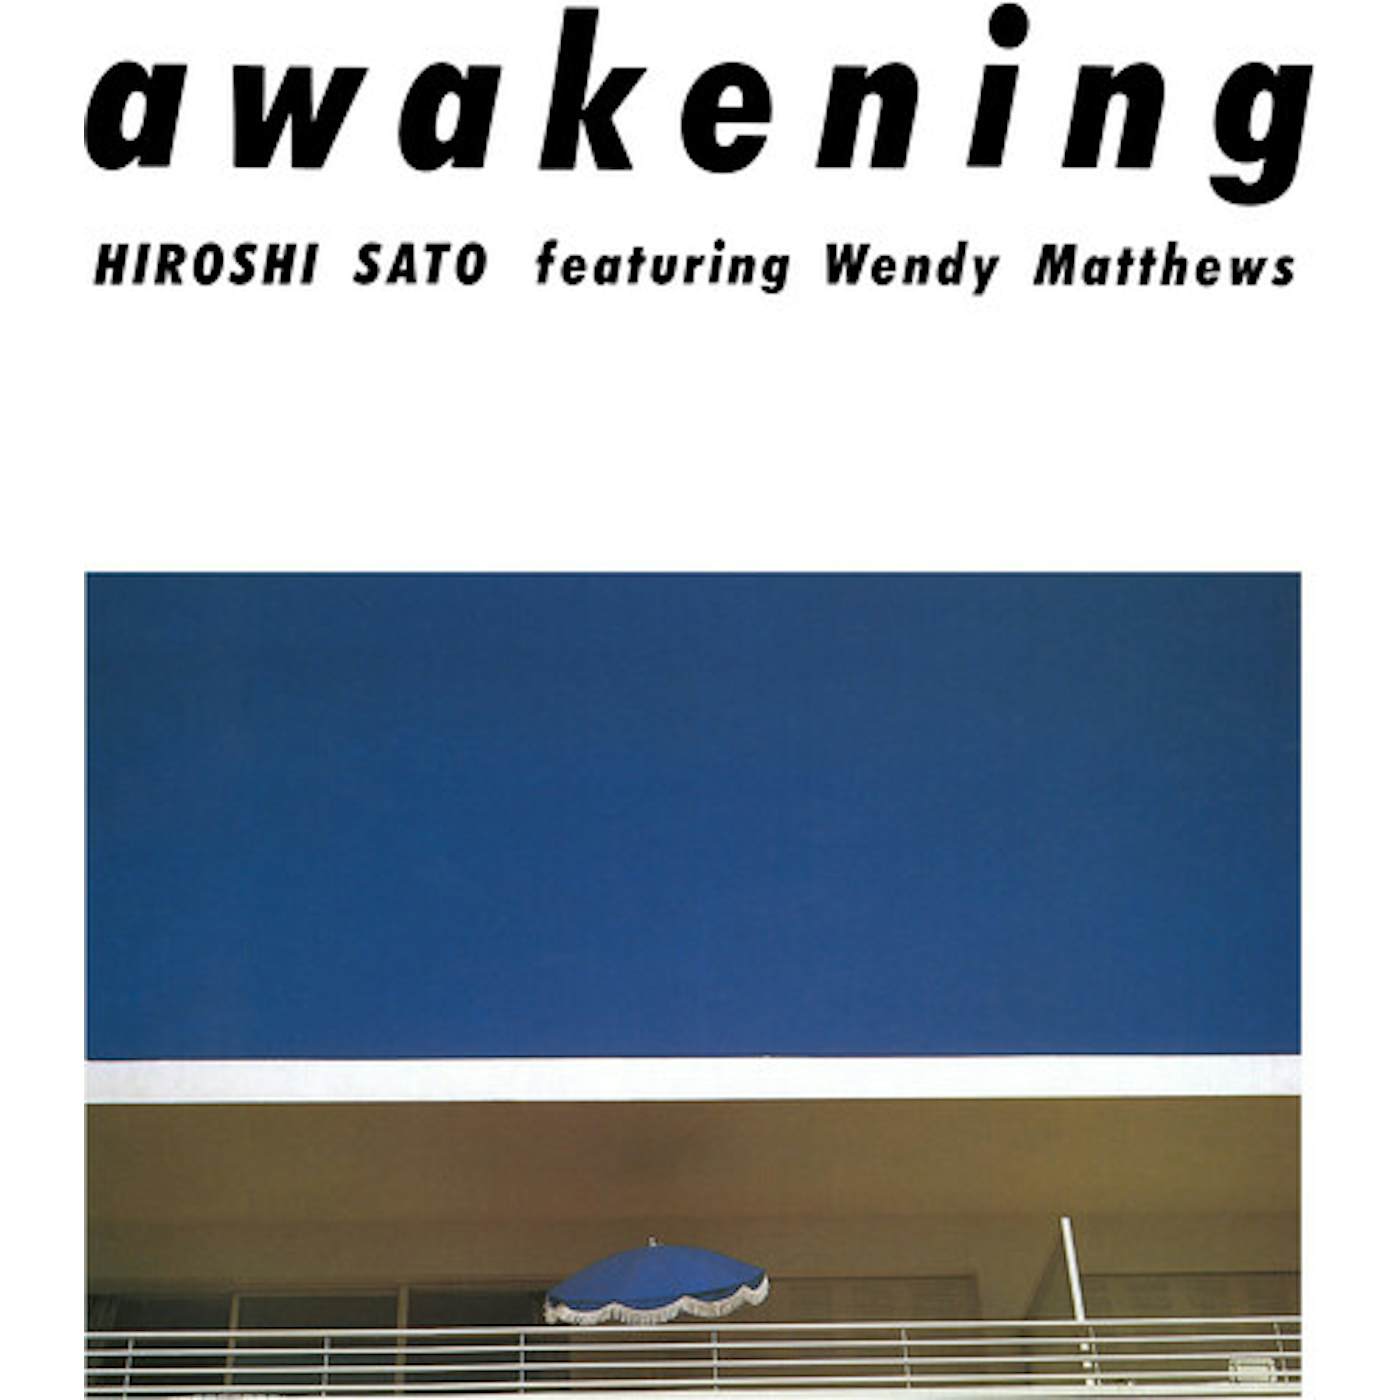 Hiroshi Sato Awakening - Special Edition Vinyl Record